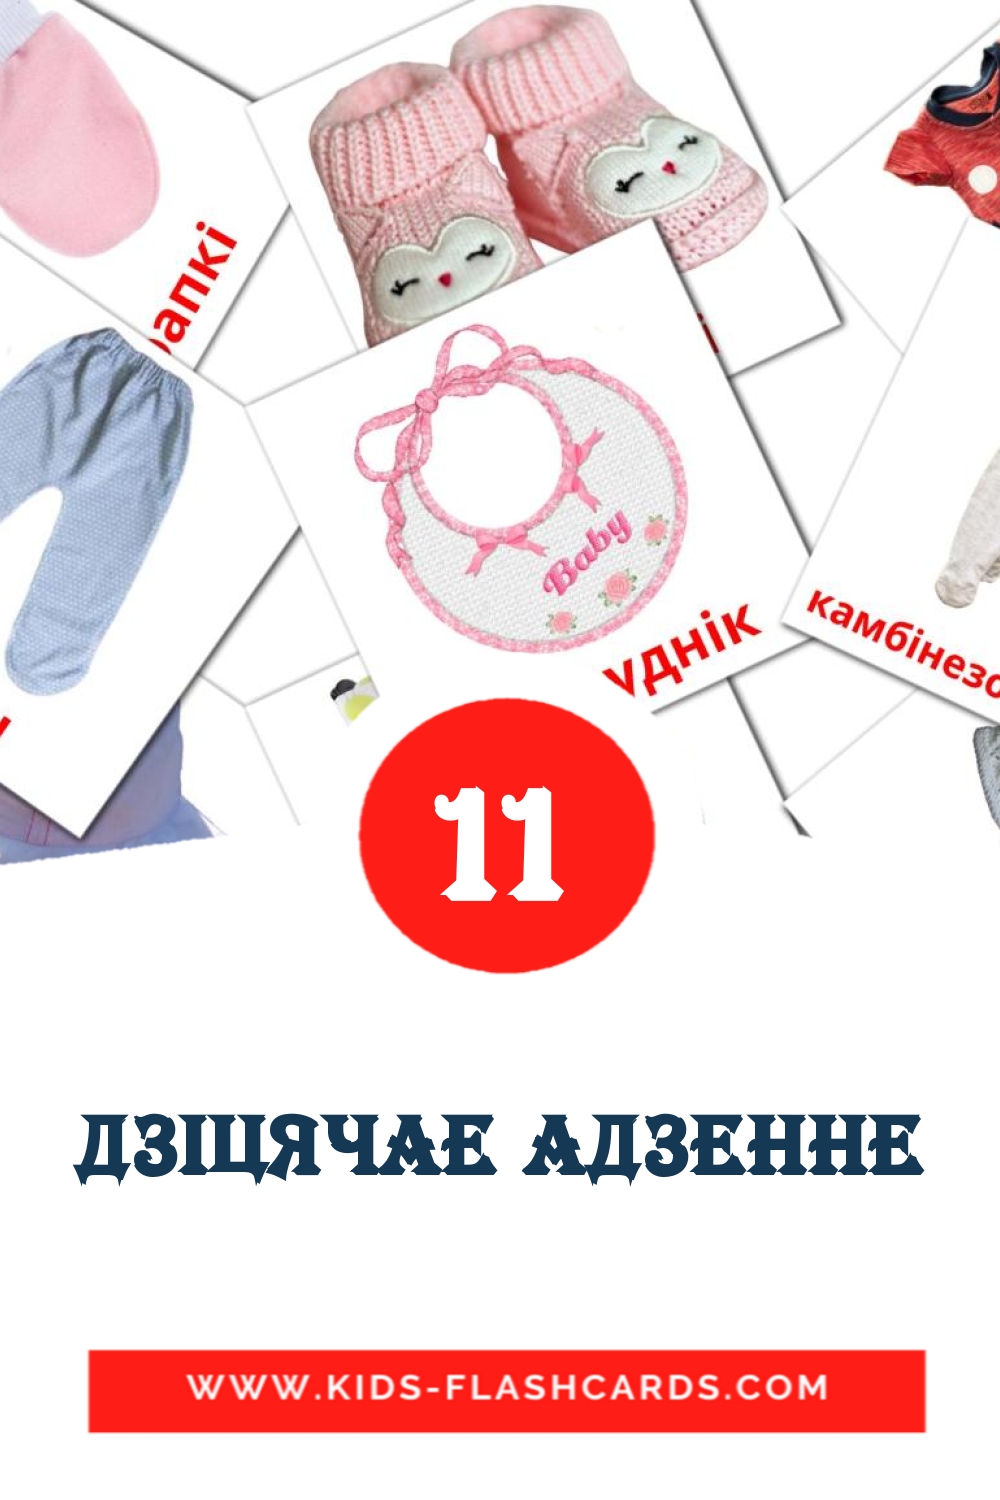 11 Cartões com Imagens de дзiцячае адзенне para Jardim de Infância em bielorrusso